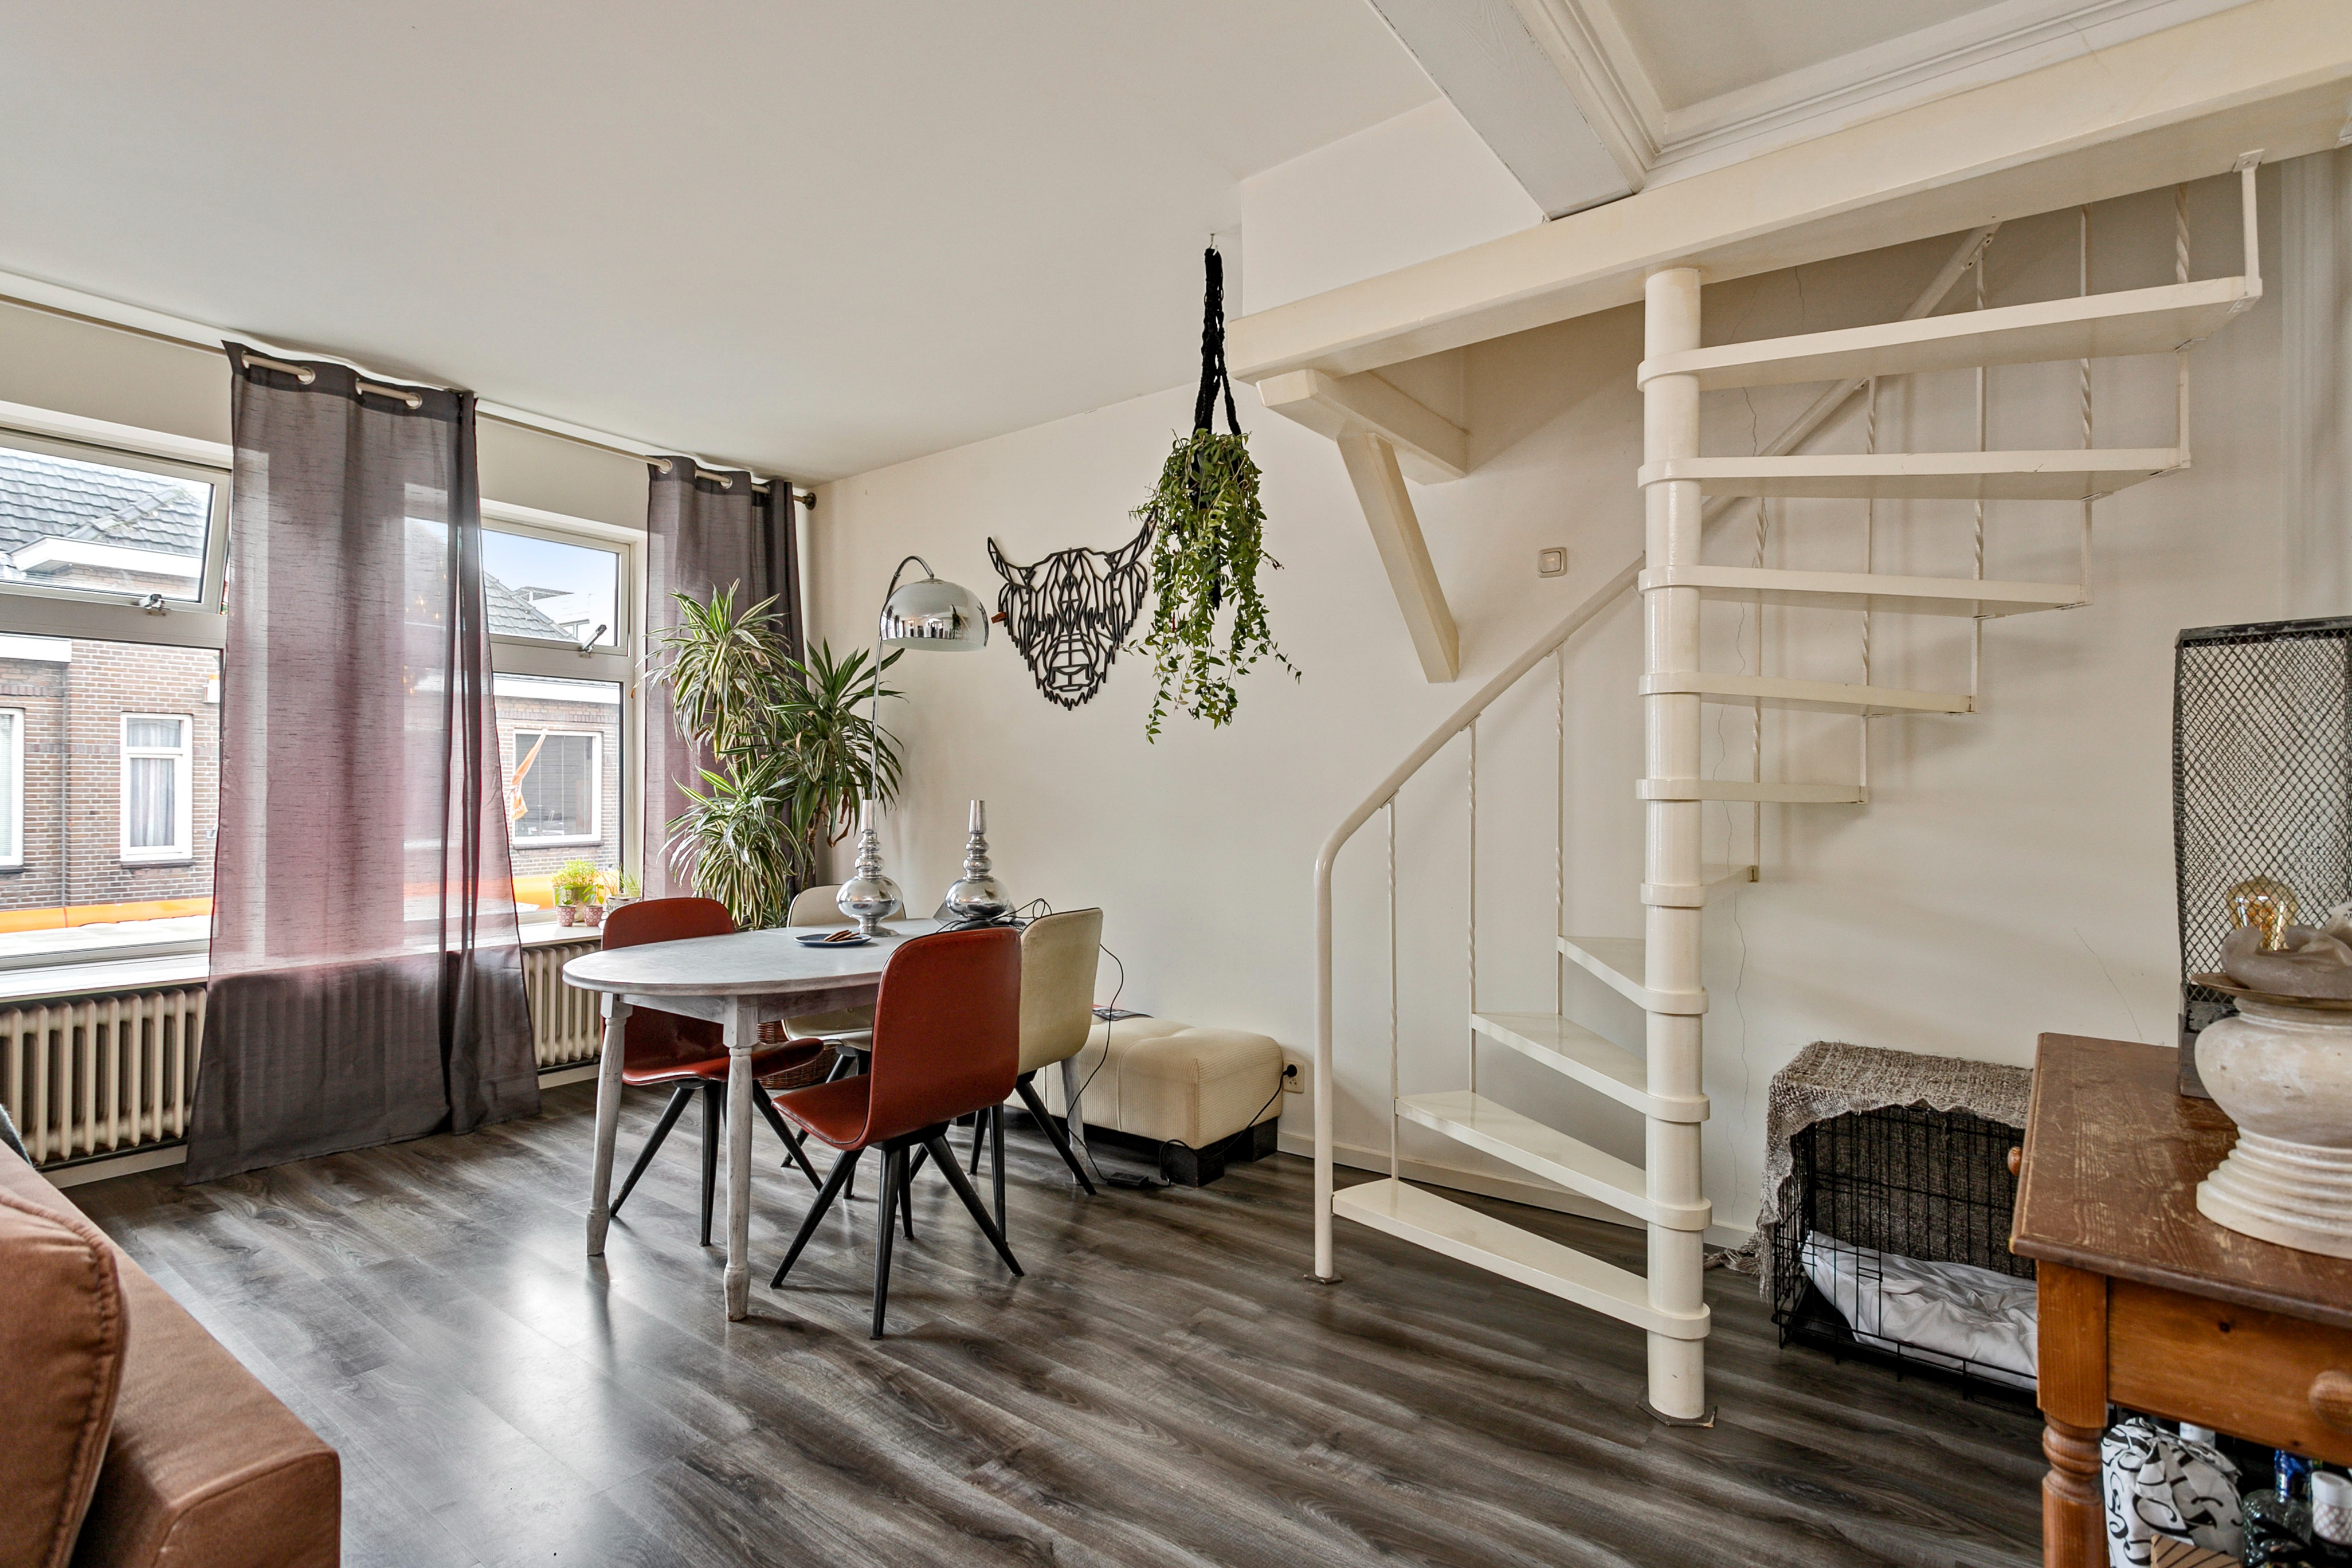 Woning / appartement - Kaatsheuvel - Poolsestraat 8